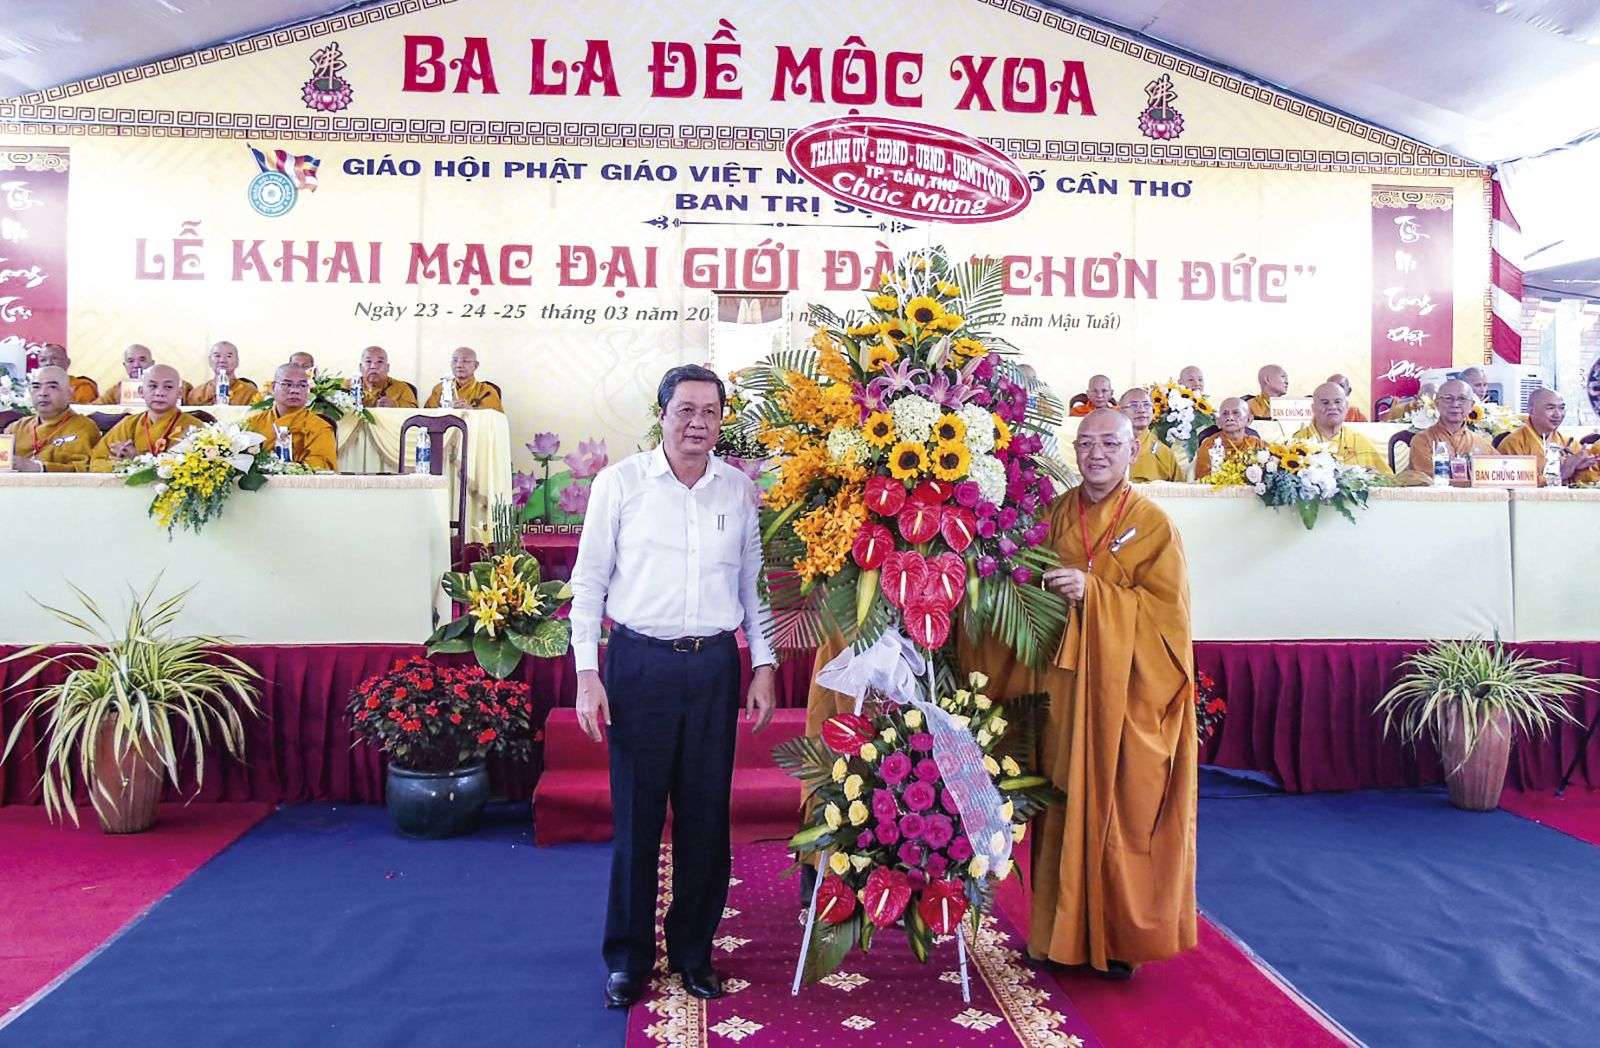 Đồng chí Phạm Văn Hiểu, Phó Bí thư Thường trực Thành ủy, trao lẵng hoa chúc mừng Đại giới đàn Chơn Đức. Ảnh: THANH THY